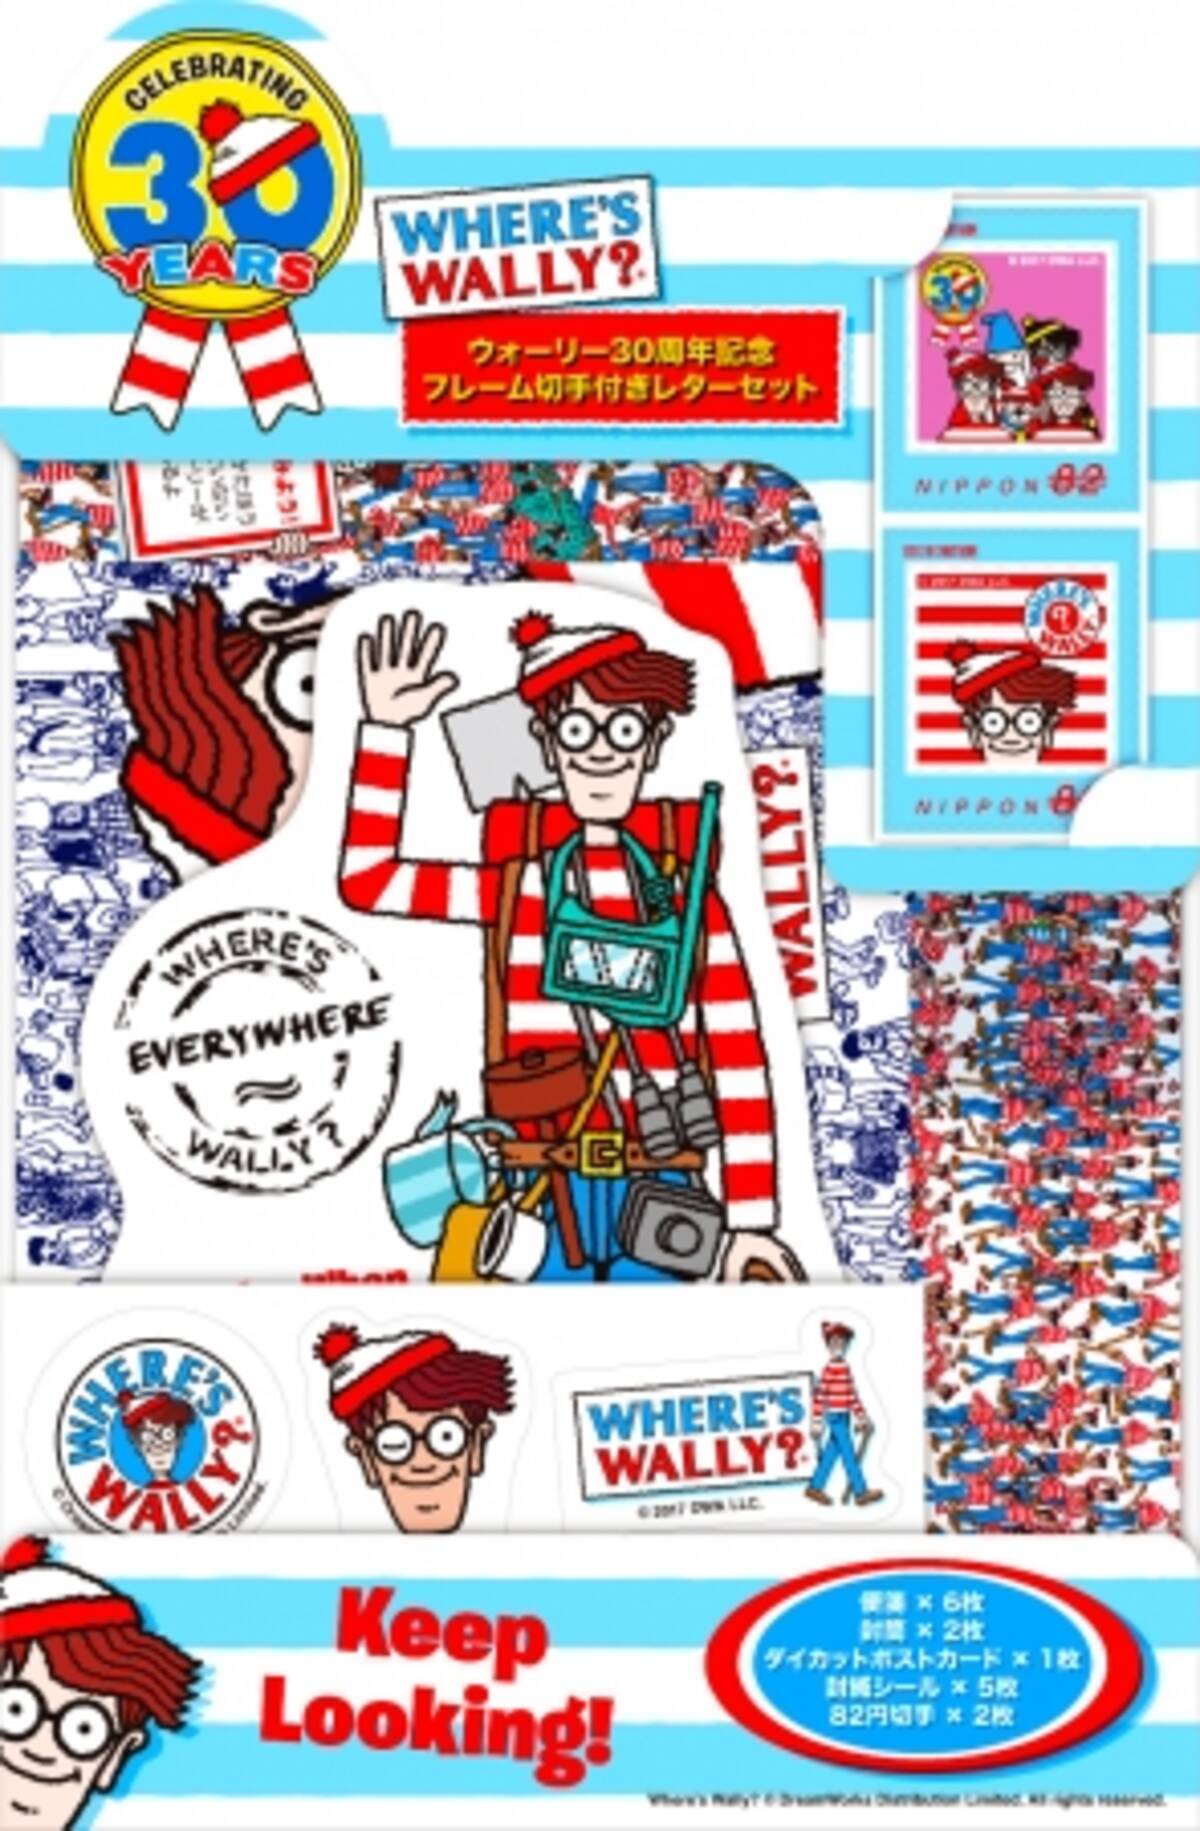 郵便局限定 Where S Wally ウォーリーをさがせ 30周年記念グッズ発売中 17年10月19日 エキサイトニュース